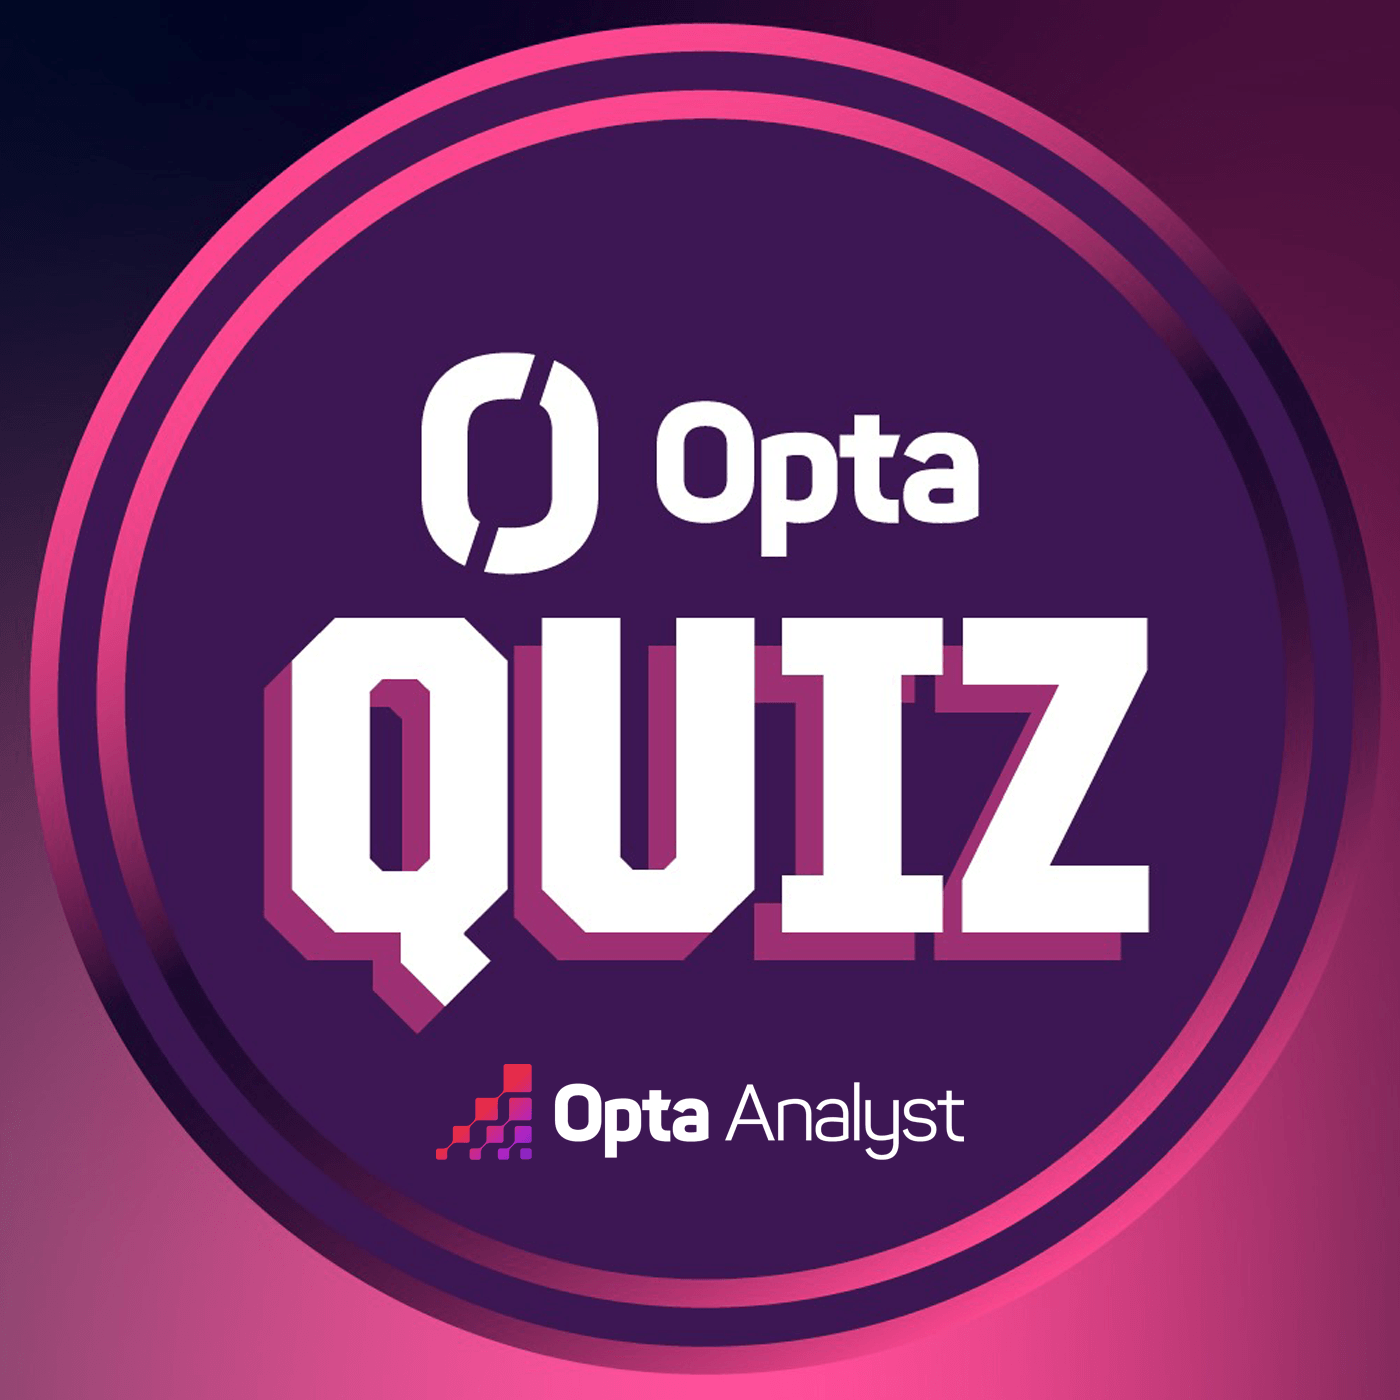 Opta Quiz No. 4: Who Am I?